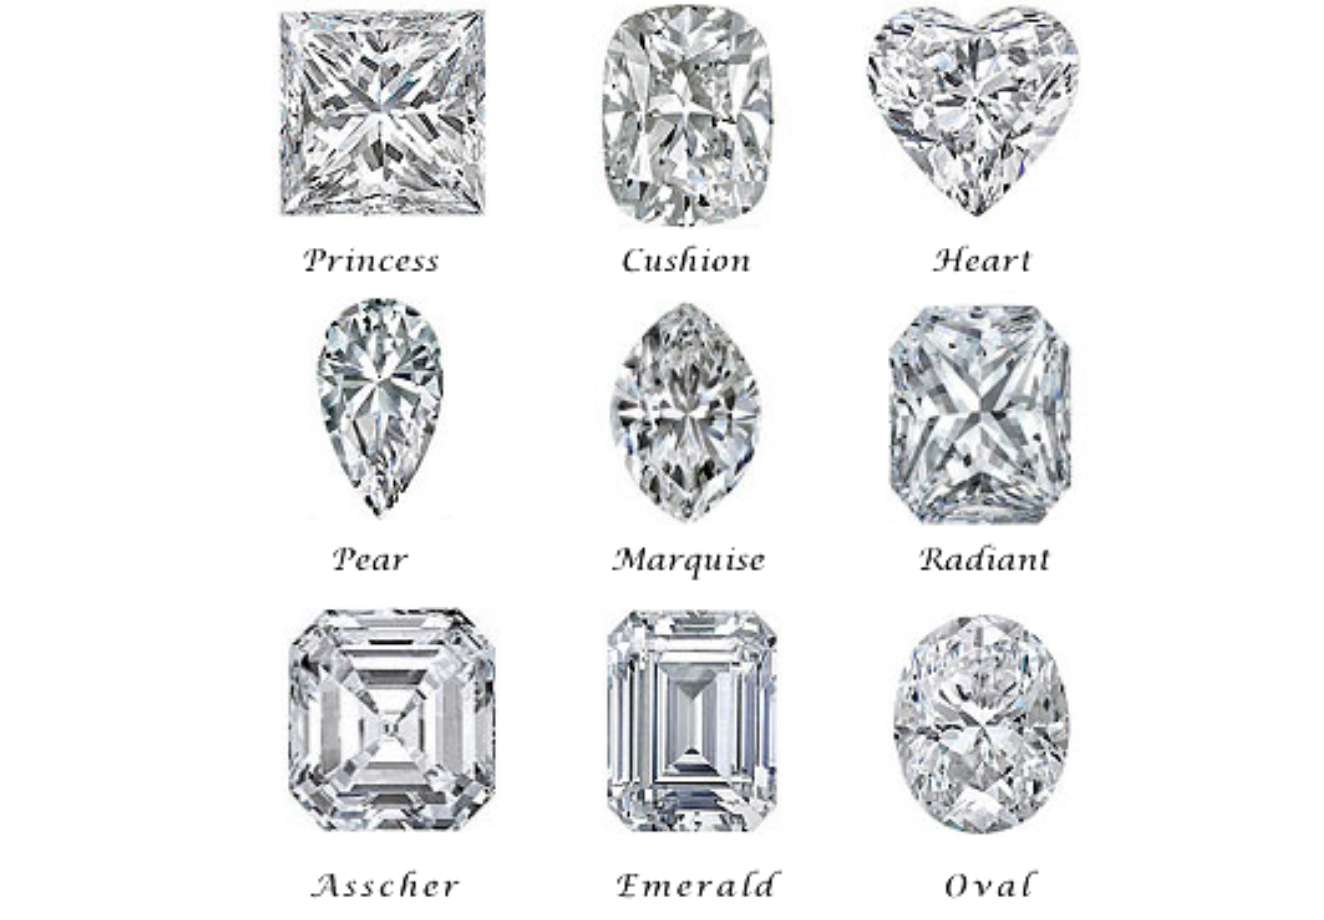 Informazioni essenziali prima di acquistare ornimenti e gioielli; alcuni tipi popolari di diamanti, vedi esempi